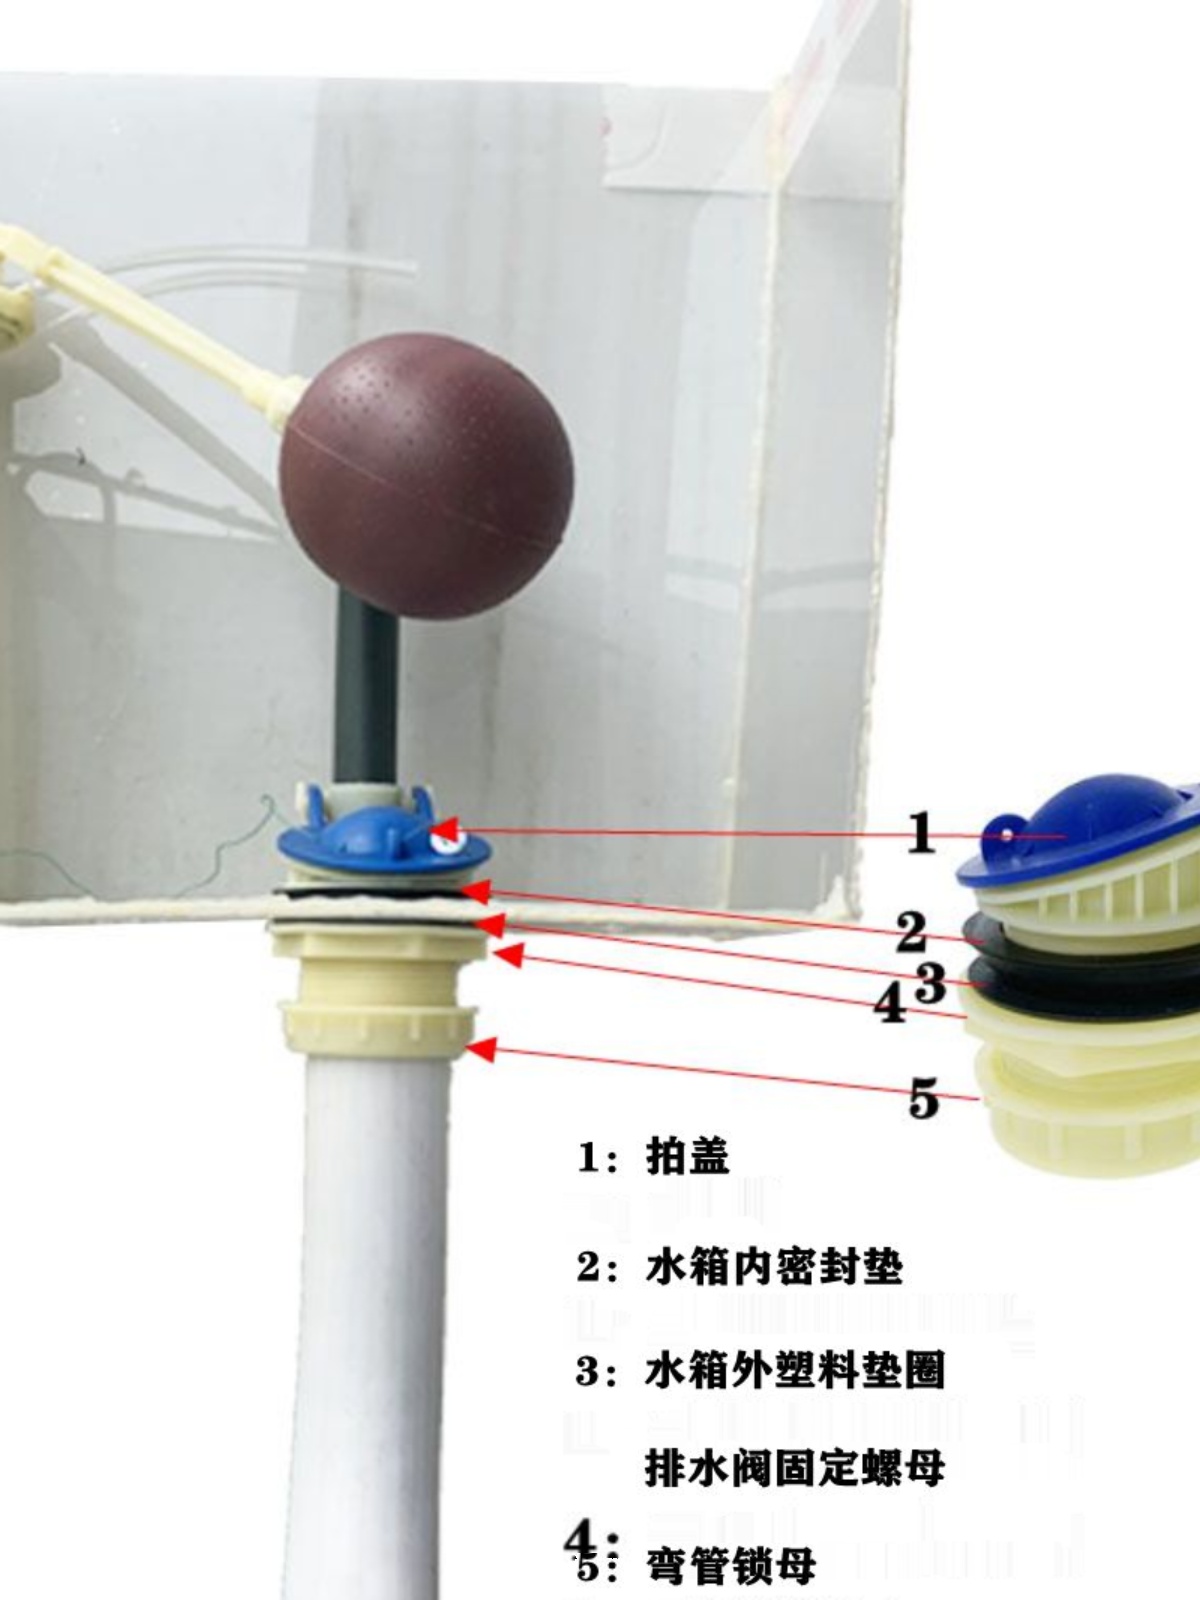 壁挂式马桶抽水马桶分体水箱配件排水阀坐便器浮球进水阀皮塞扳手